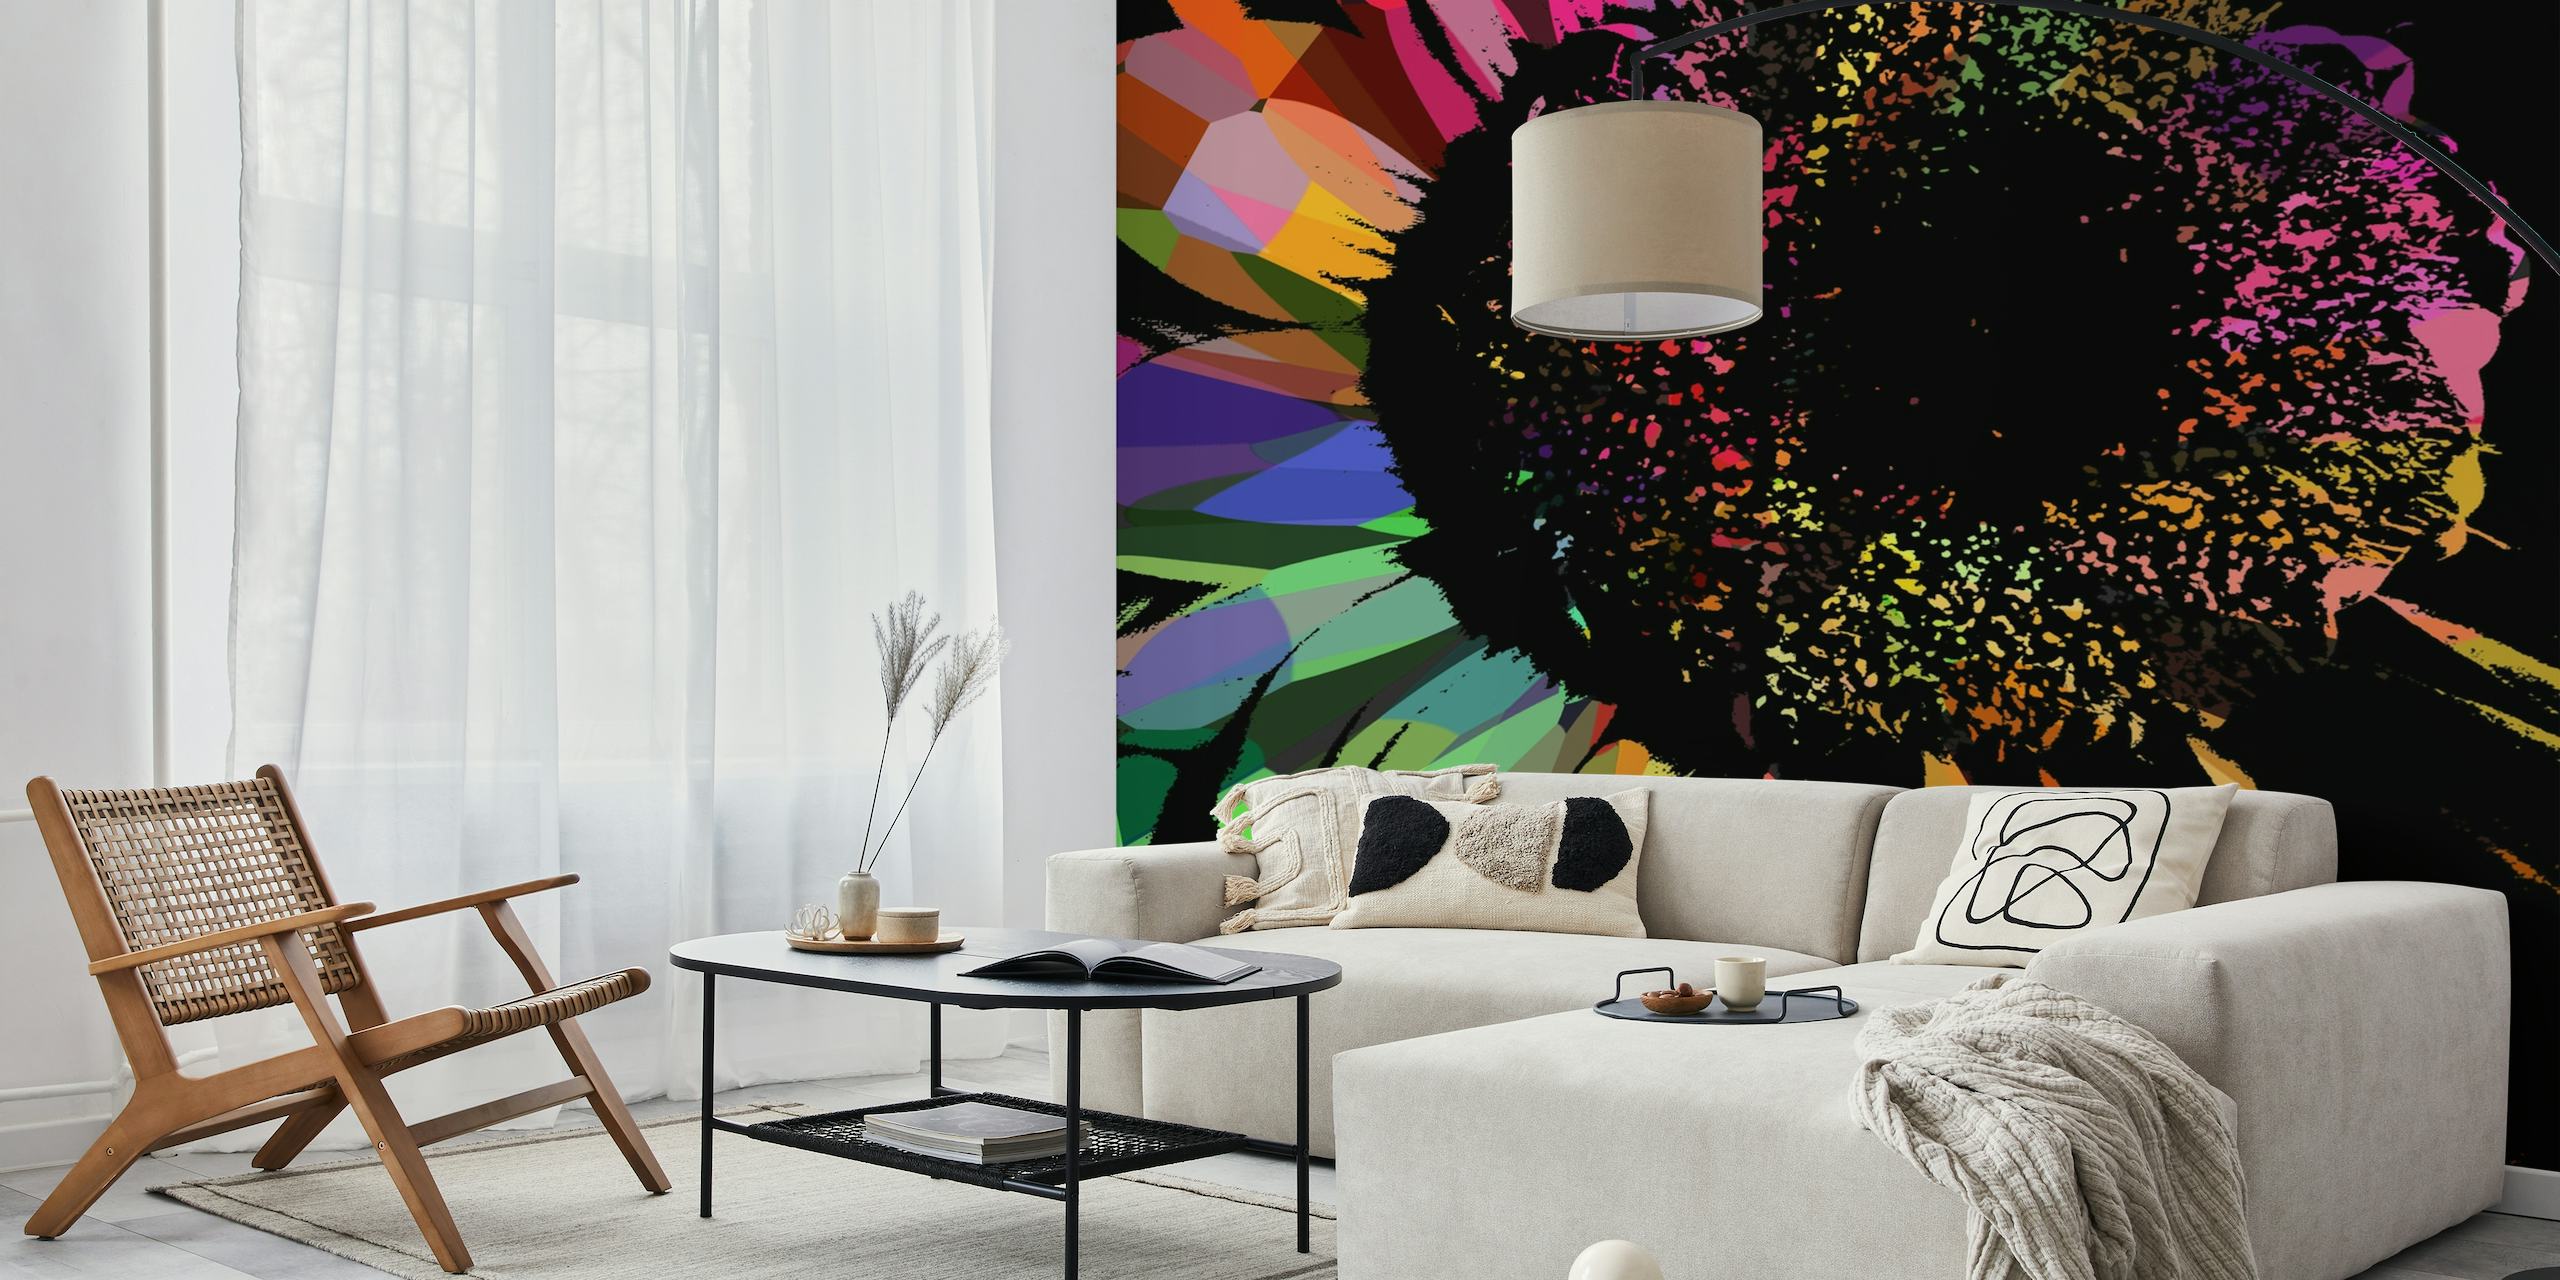 Värikäs abstrakti seinämaalaus kukkivasta kukasta dynaamisilla vedoilla